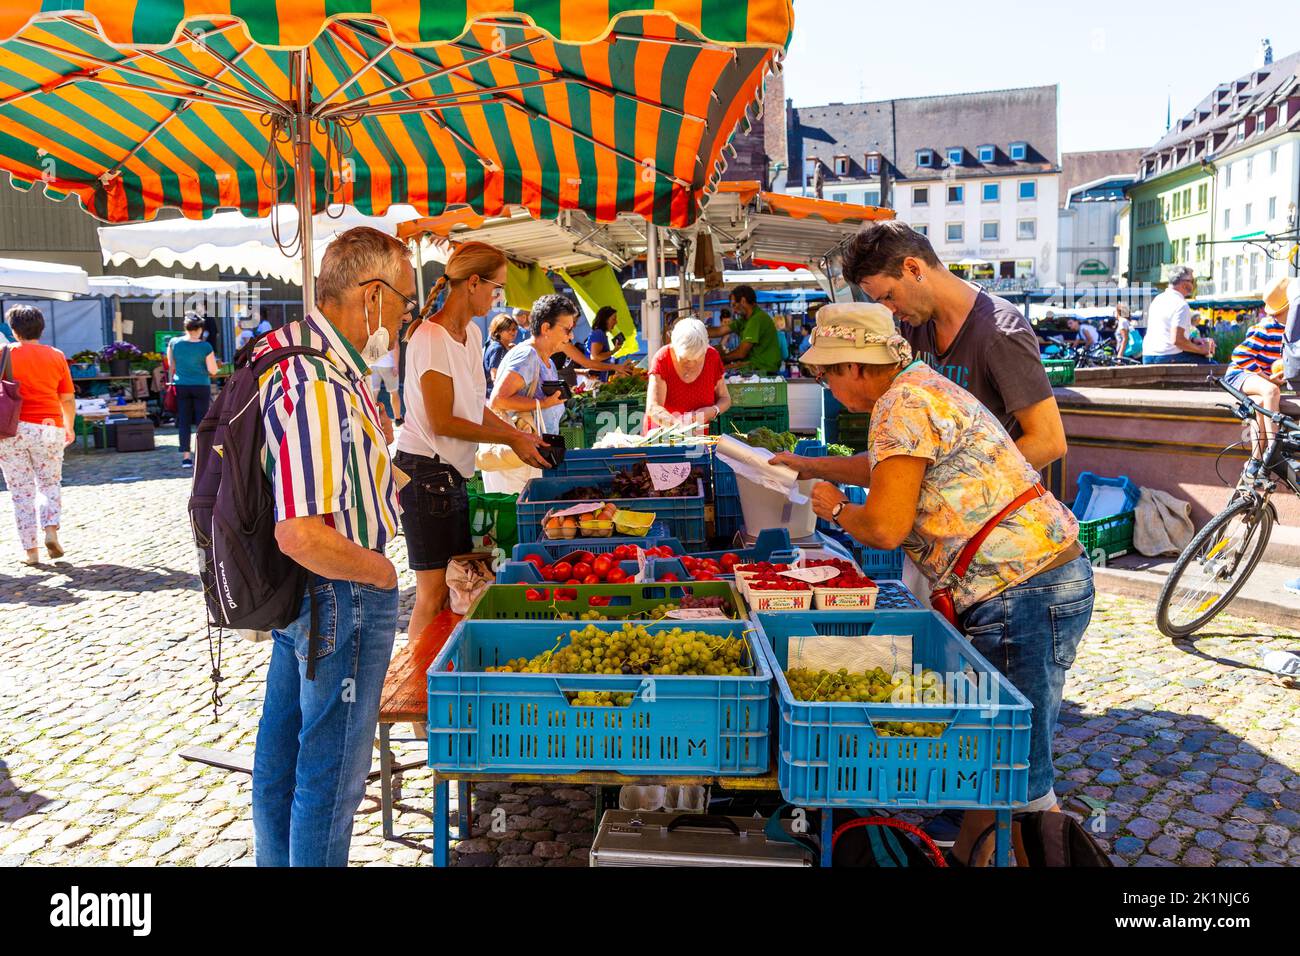 La gente che acquista in una bancarella di frutta e verdura al mercato di Münstermarkt sul Münsterplatz, Friburgo in Breisgau, Germania Foto Stock